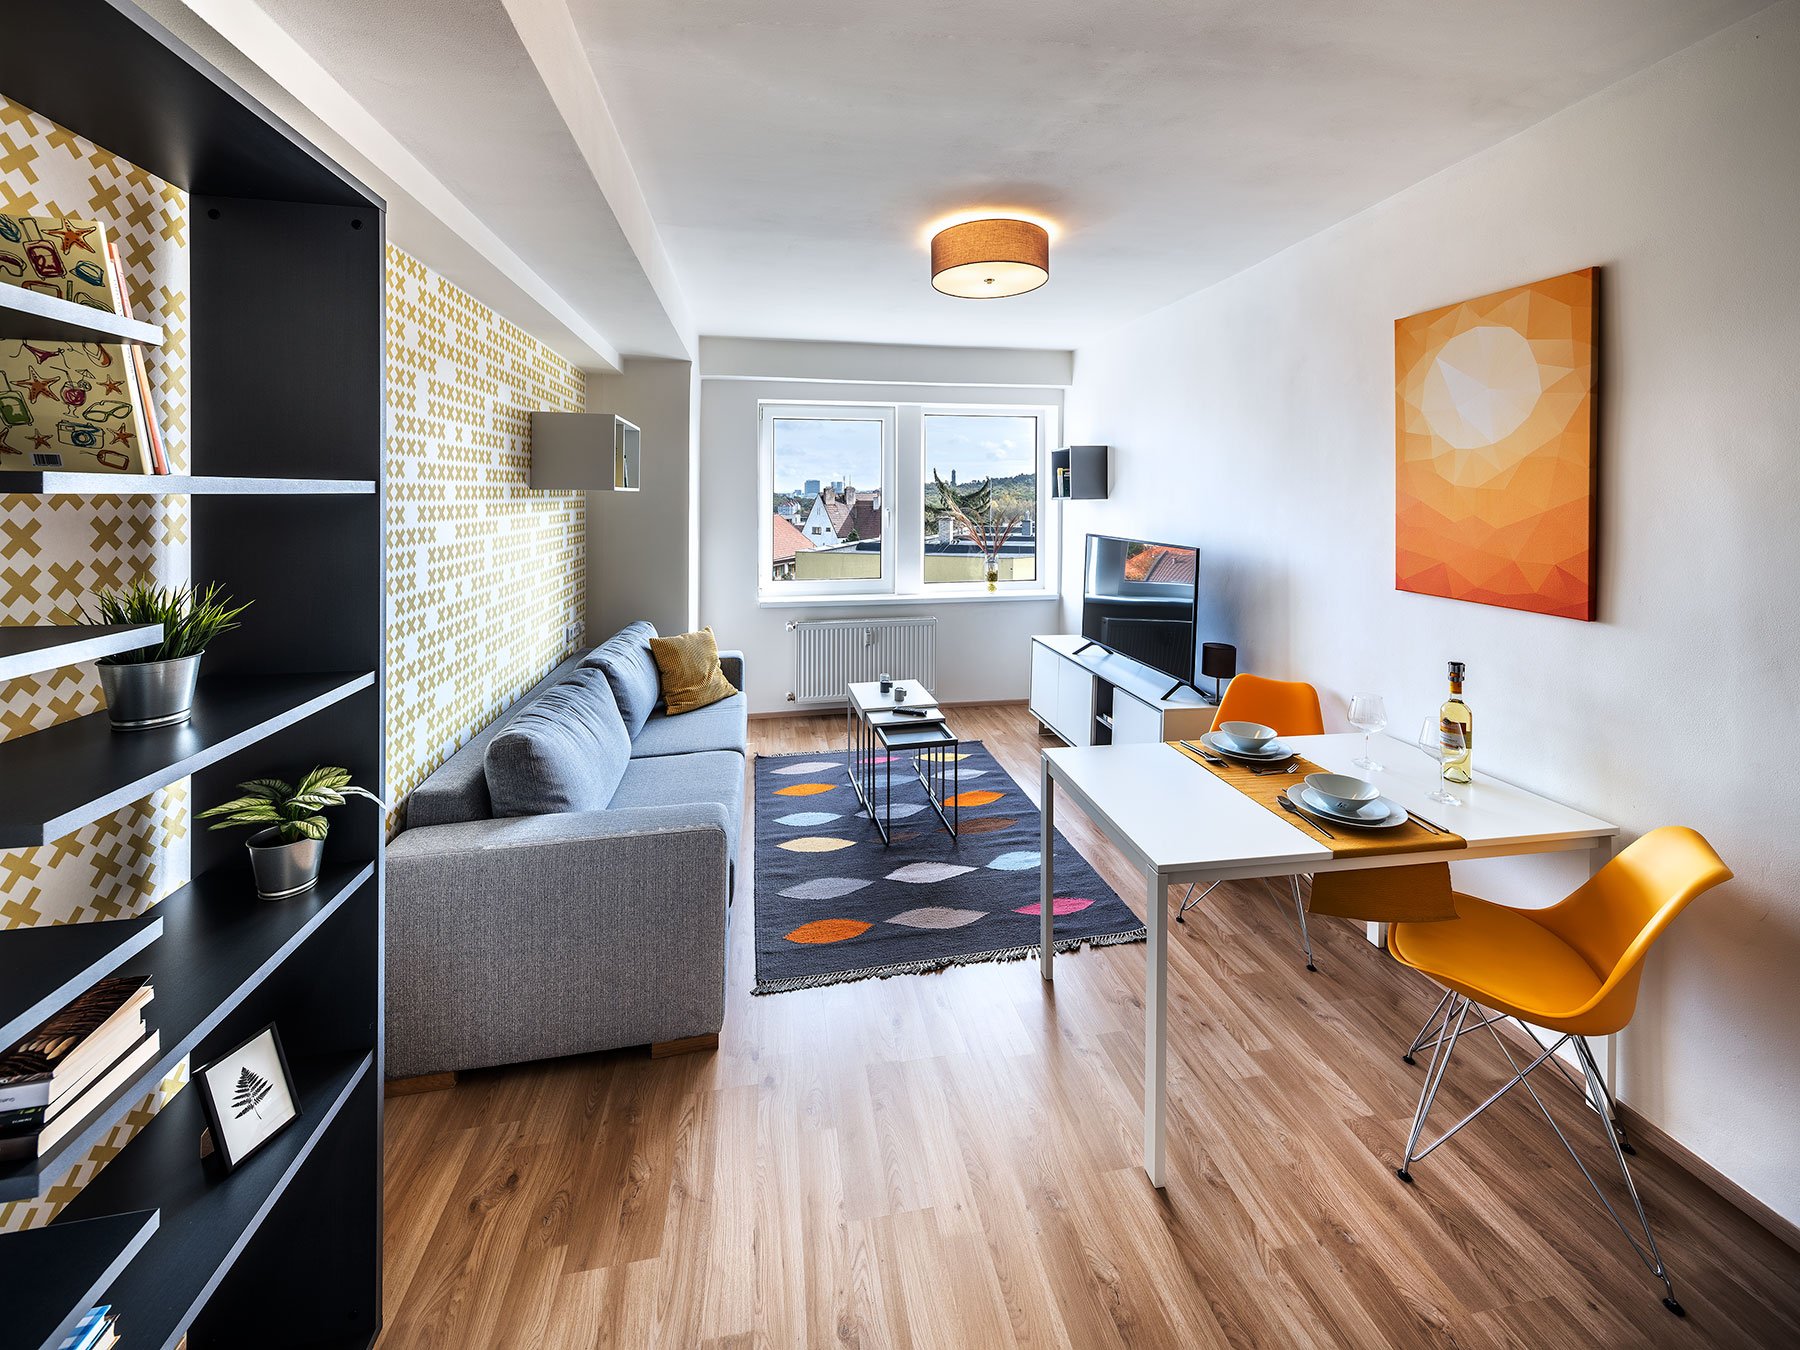 Malé byty jsou v Česku žádané. Souvisí to s fenoménem singles a mingles